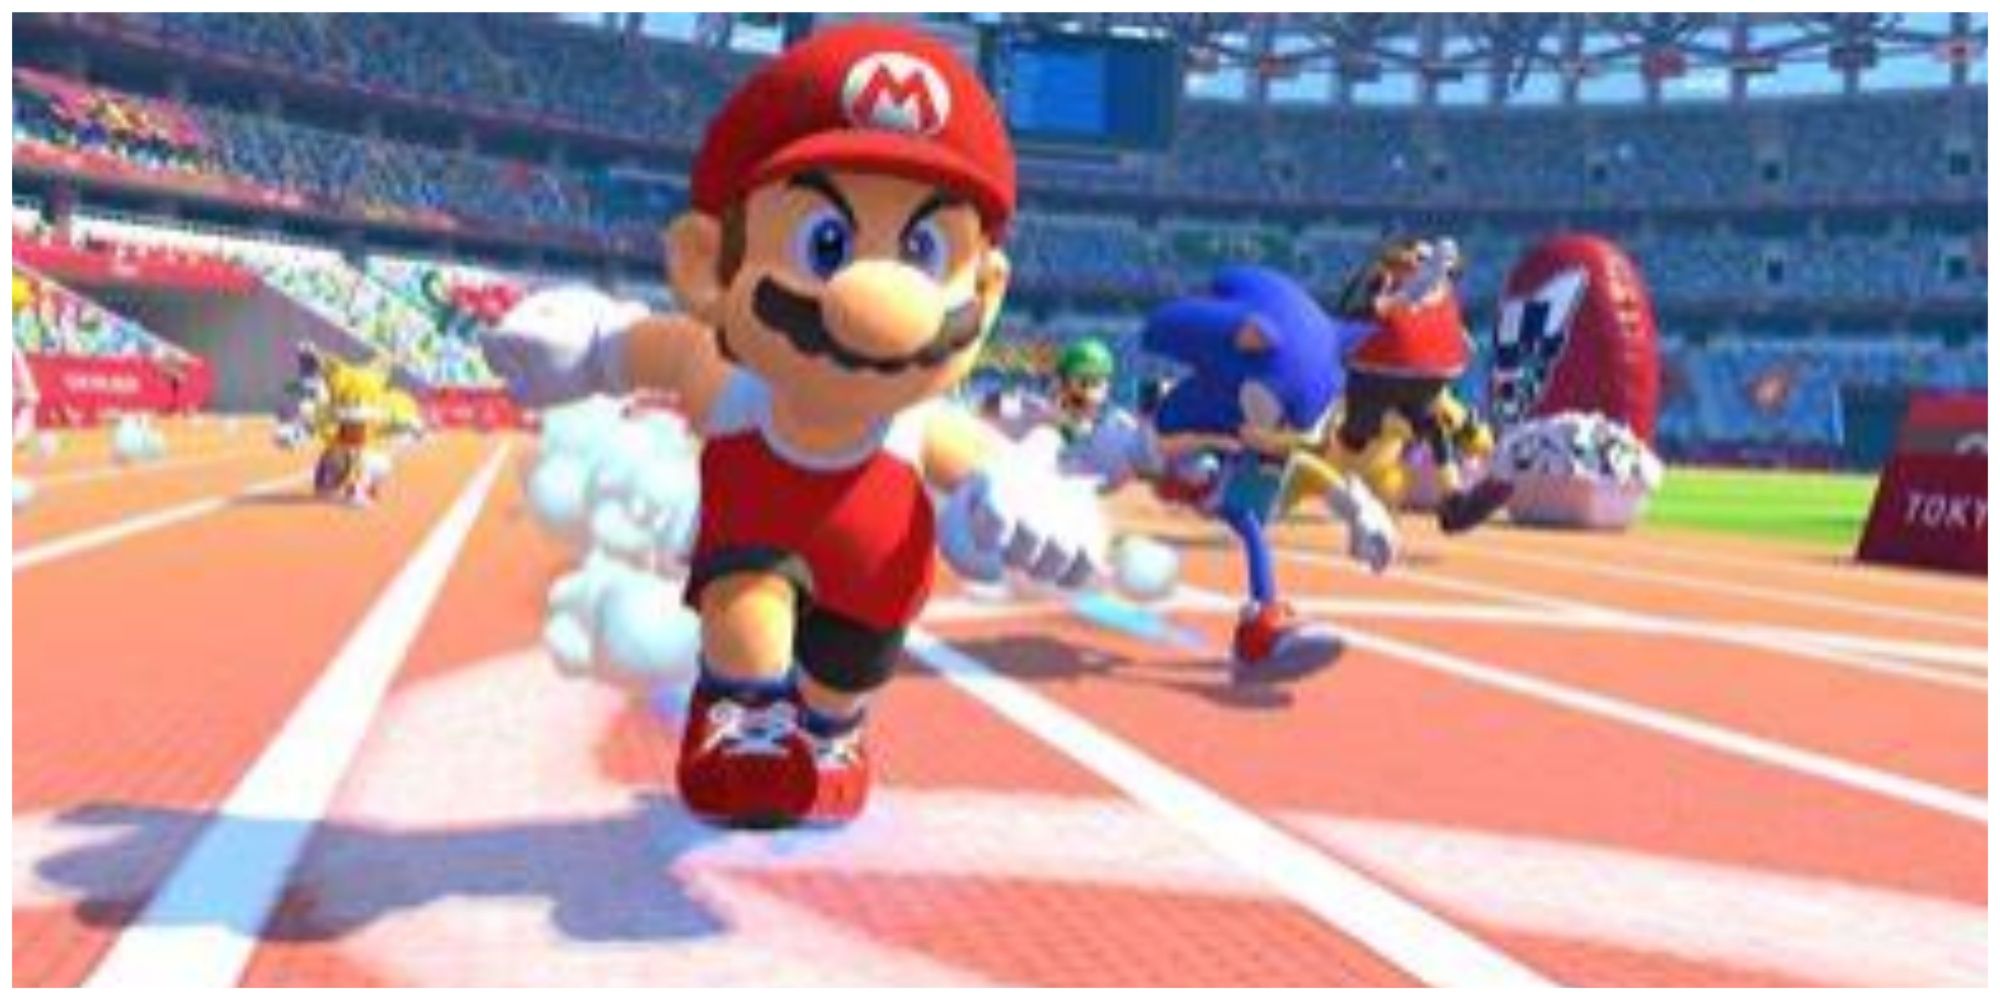 Mario at the Olympics